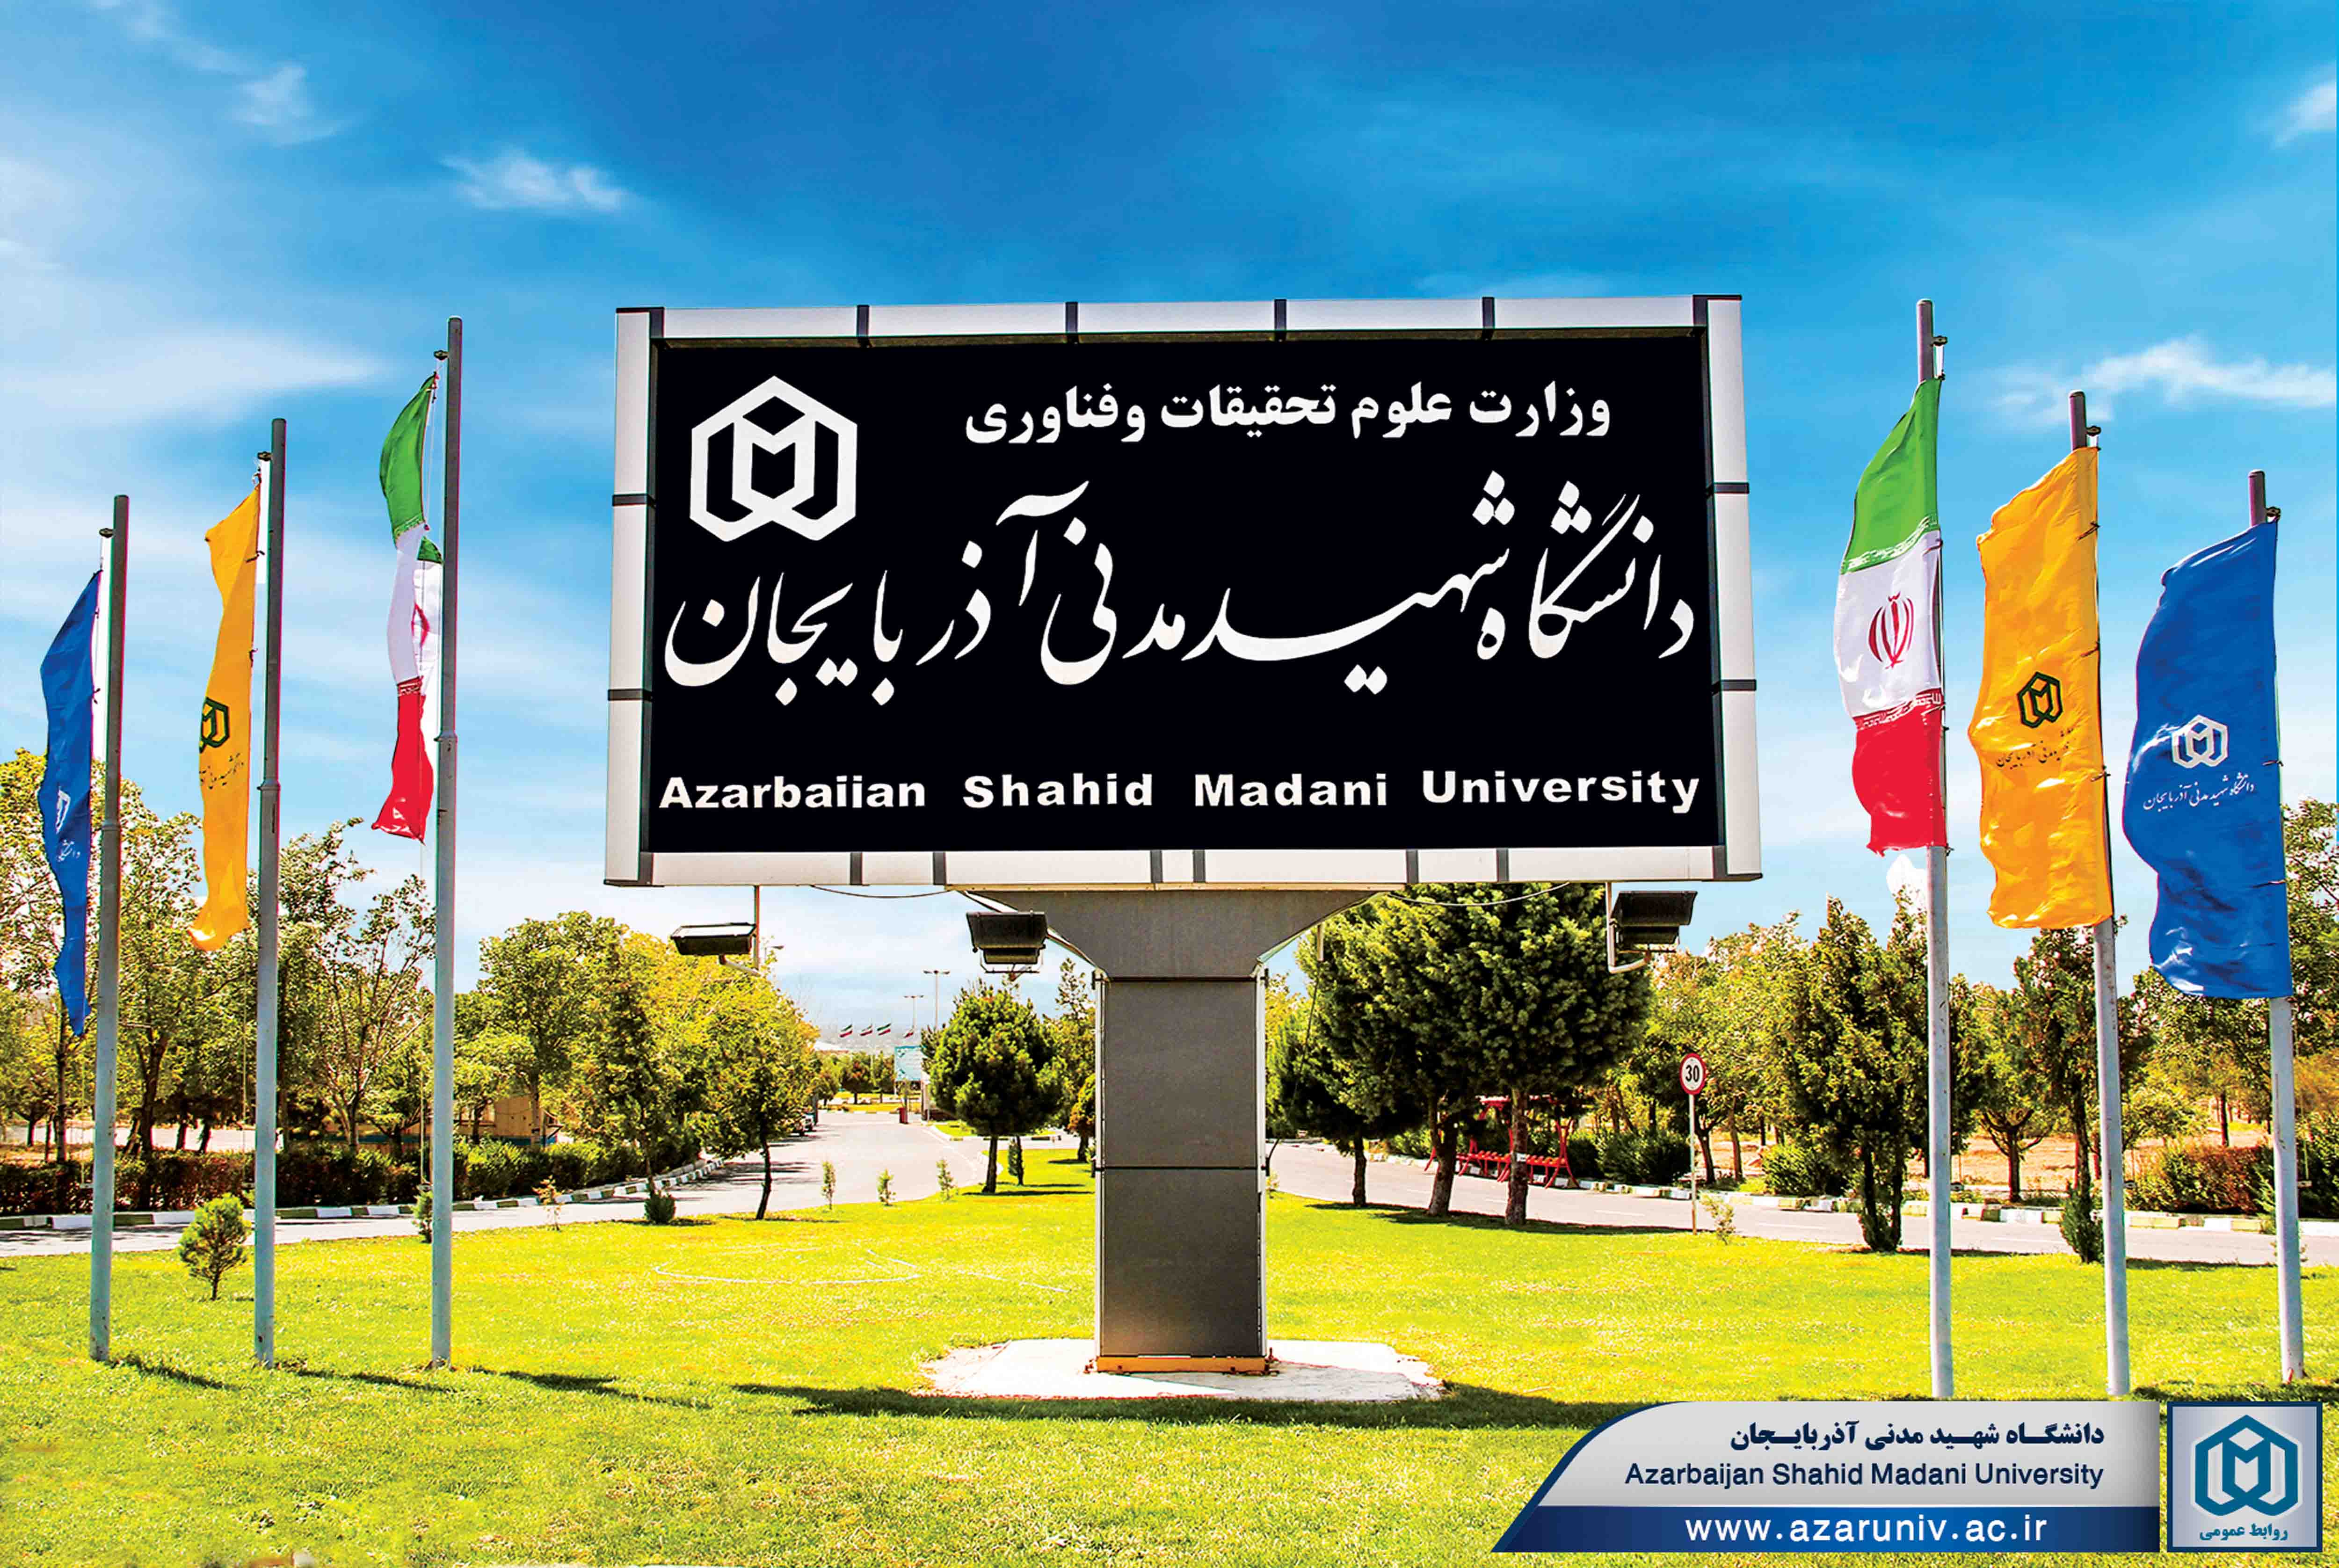  دانشگاه شهيد مدني آذربايجان - تبريز - از تاریخ ۱۹ شهریور ۱۳۹۹ به ستاو ملحق شده است.